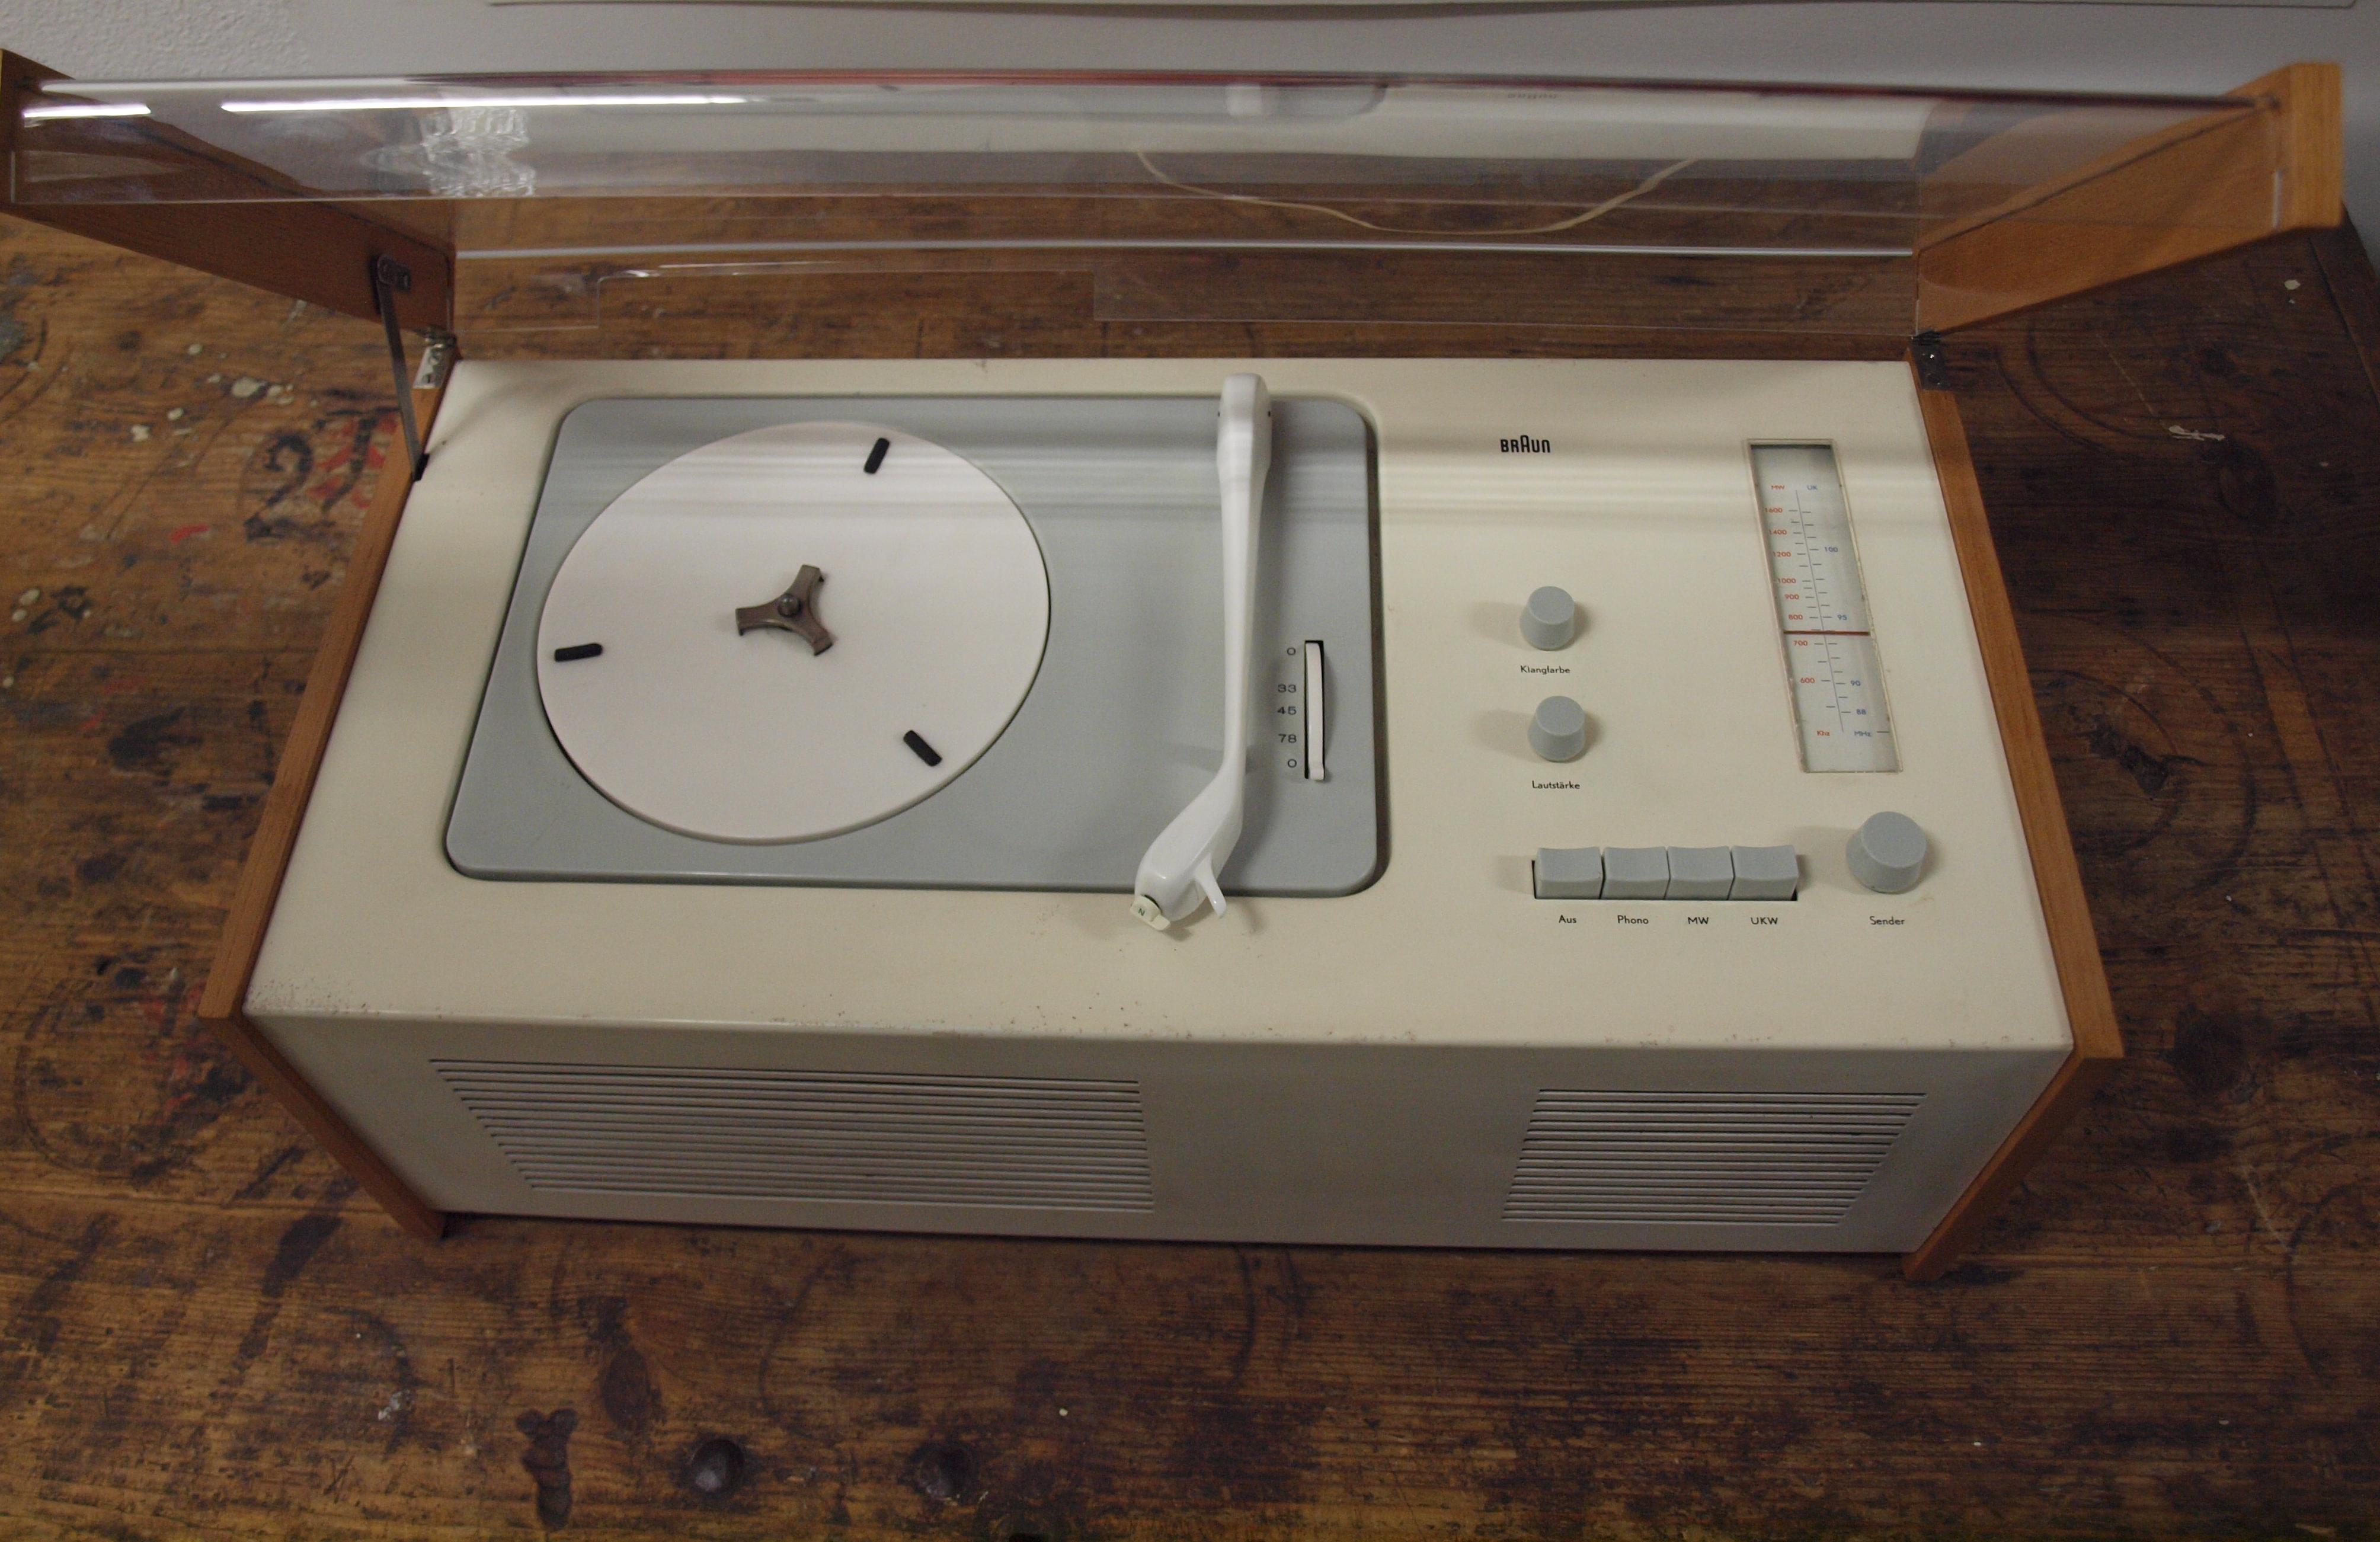 Tourne-disque SK4 conçu par Dieter Rams et Hans Gugelot pour Braun, 1958.
La radio est restaurée avec un nouveau capot en acrylique. Surface techniquement parfaite et originale. Avec la housse de protection Braun, la fiche d'origine et le manuel.